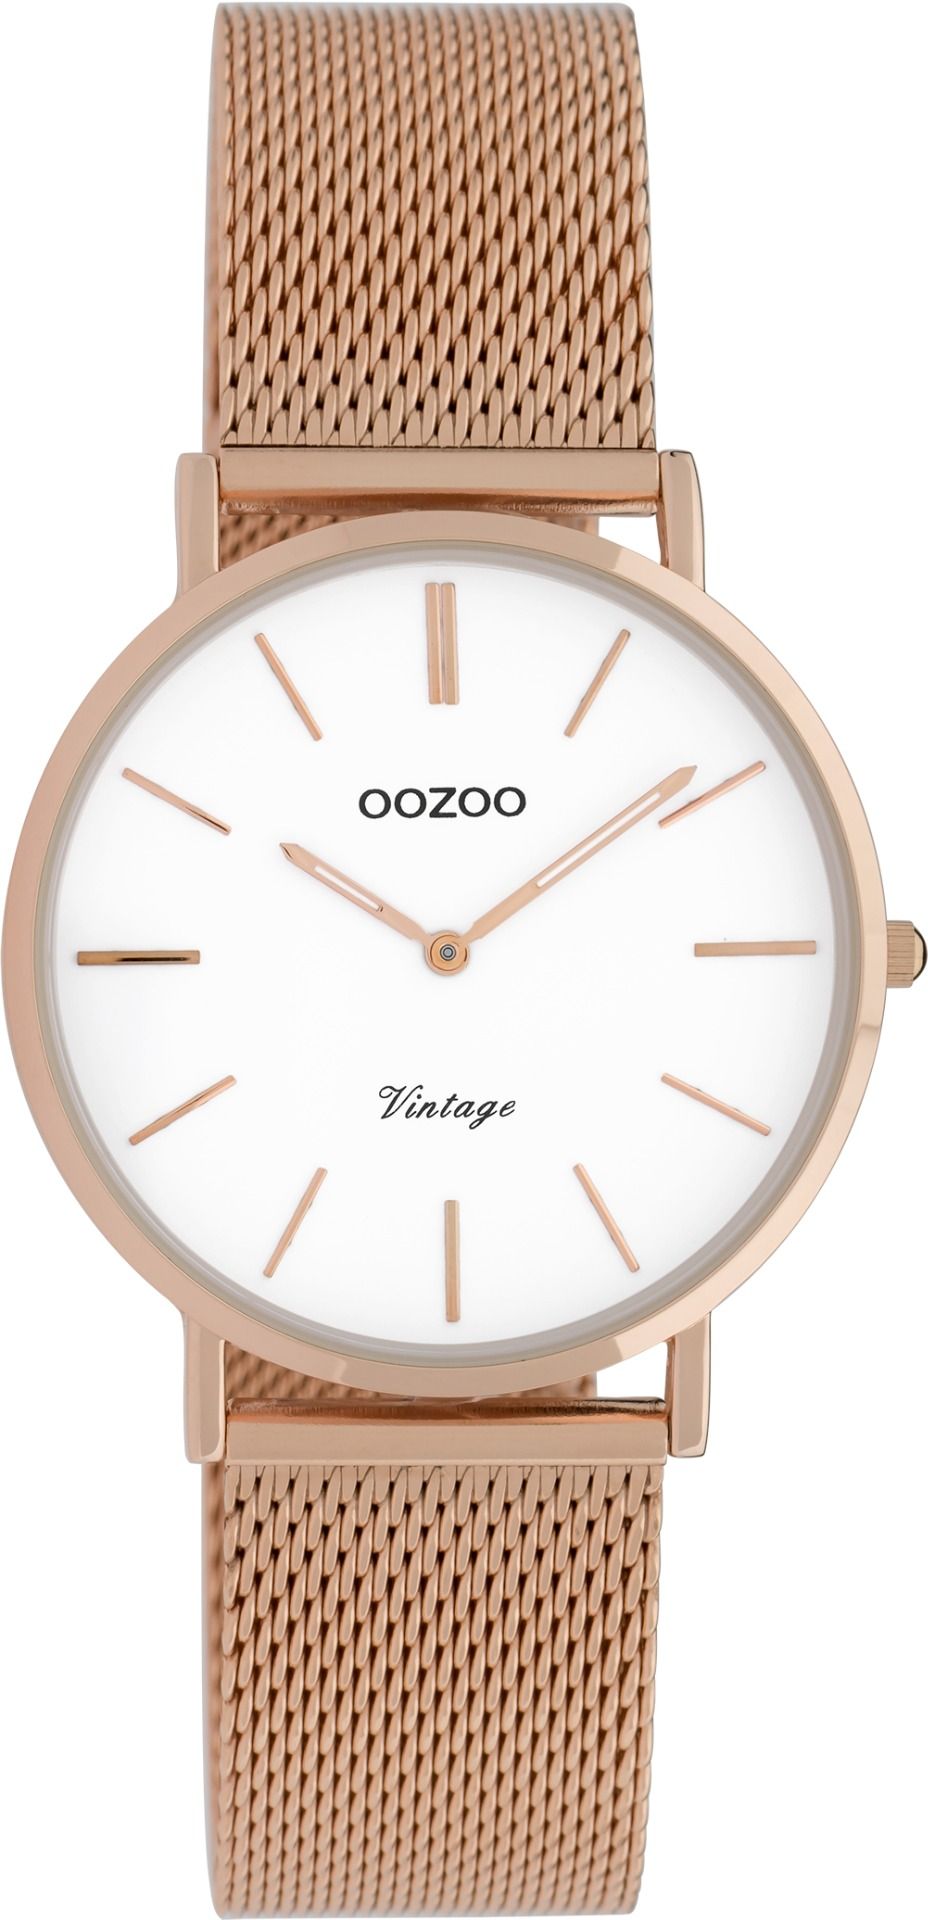 OOZOO Vintage 9919 - 32mm